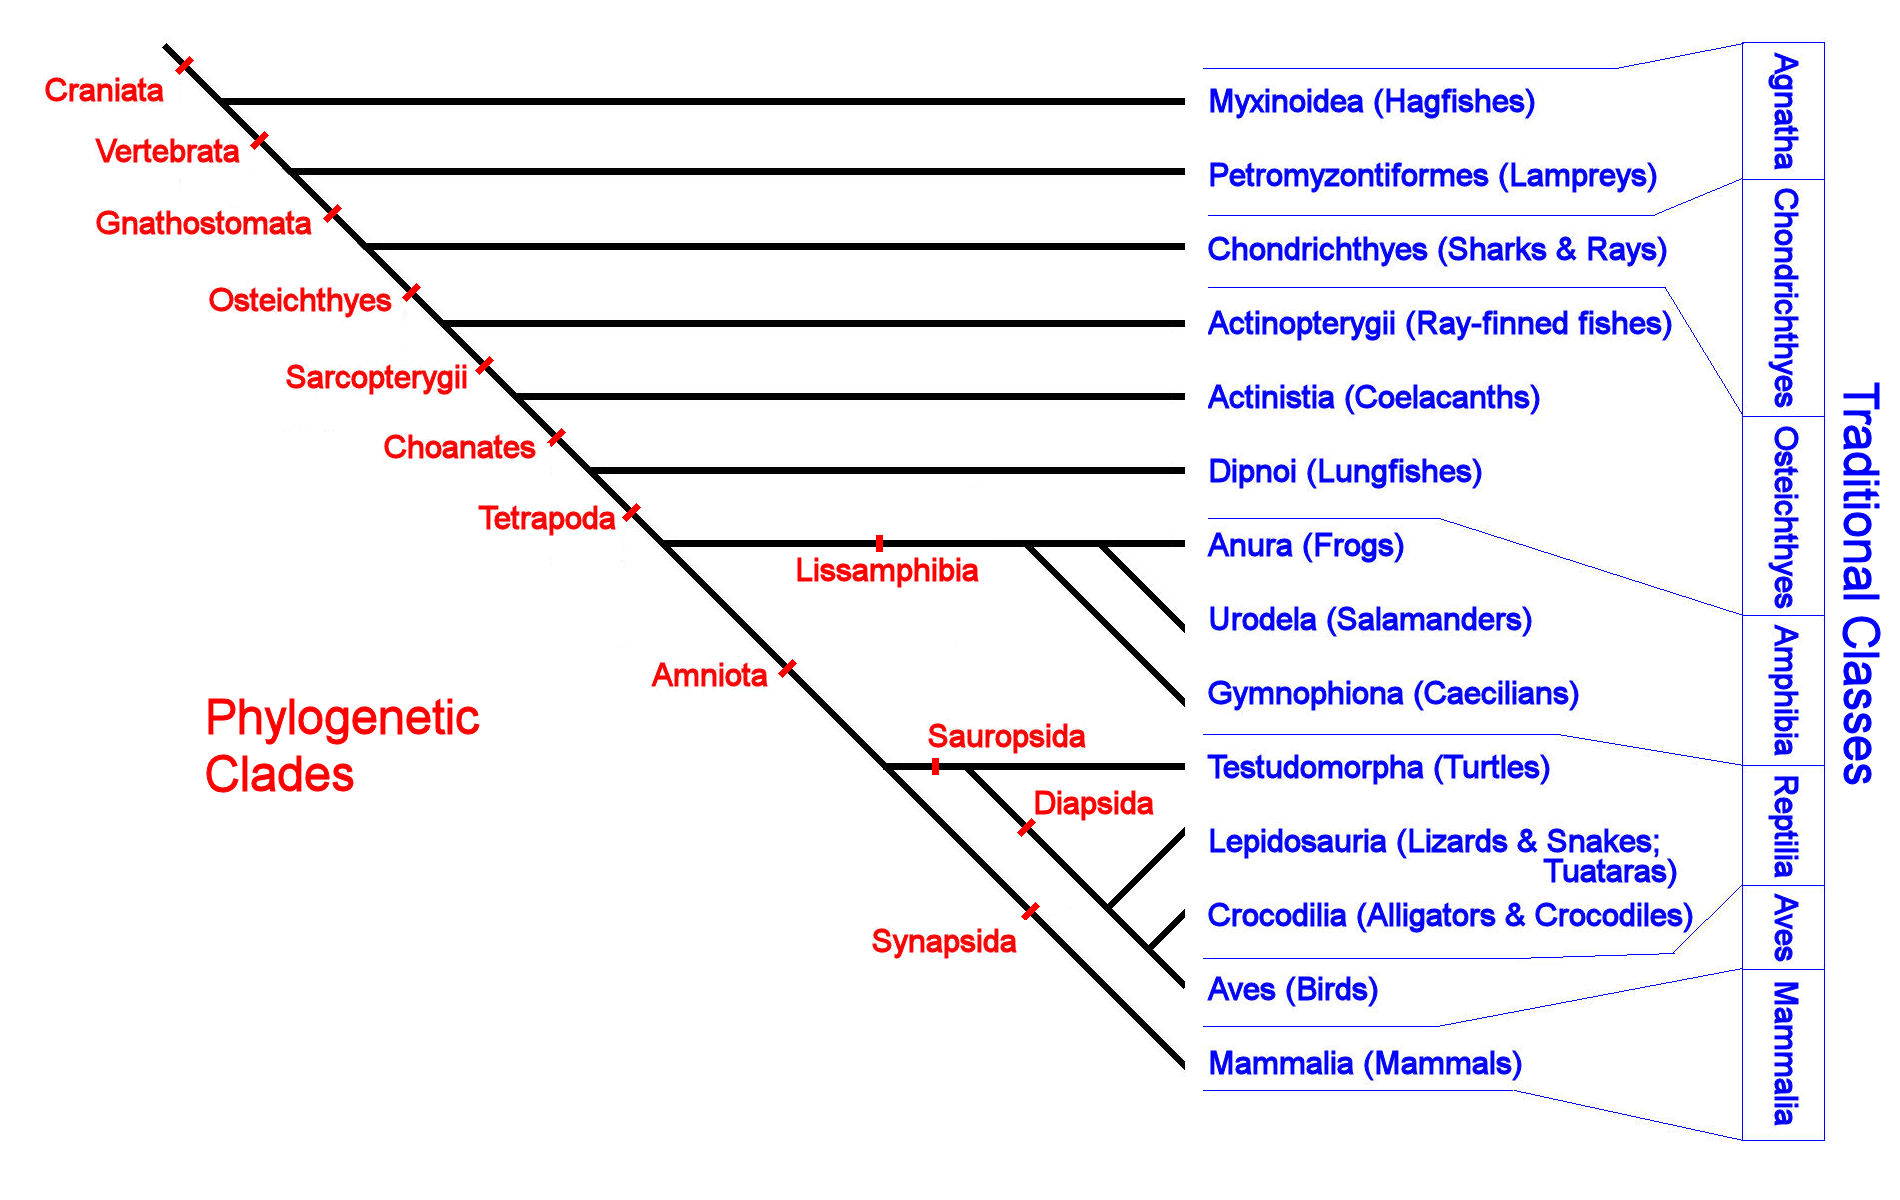 Phylogenetic taxonomy of the Vertebrates